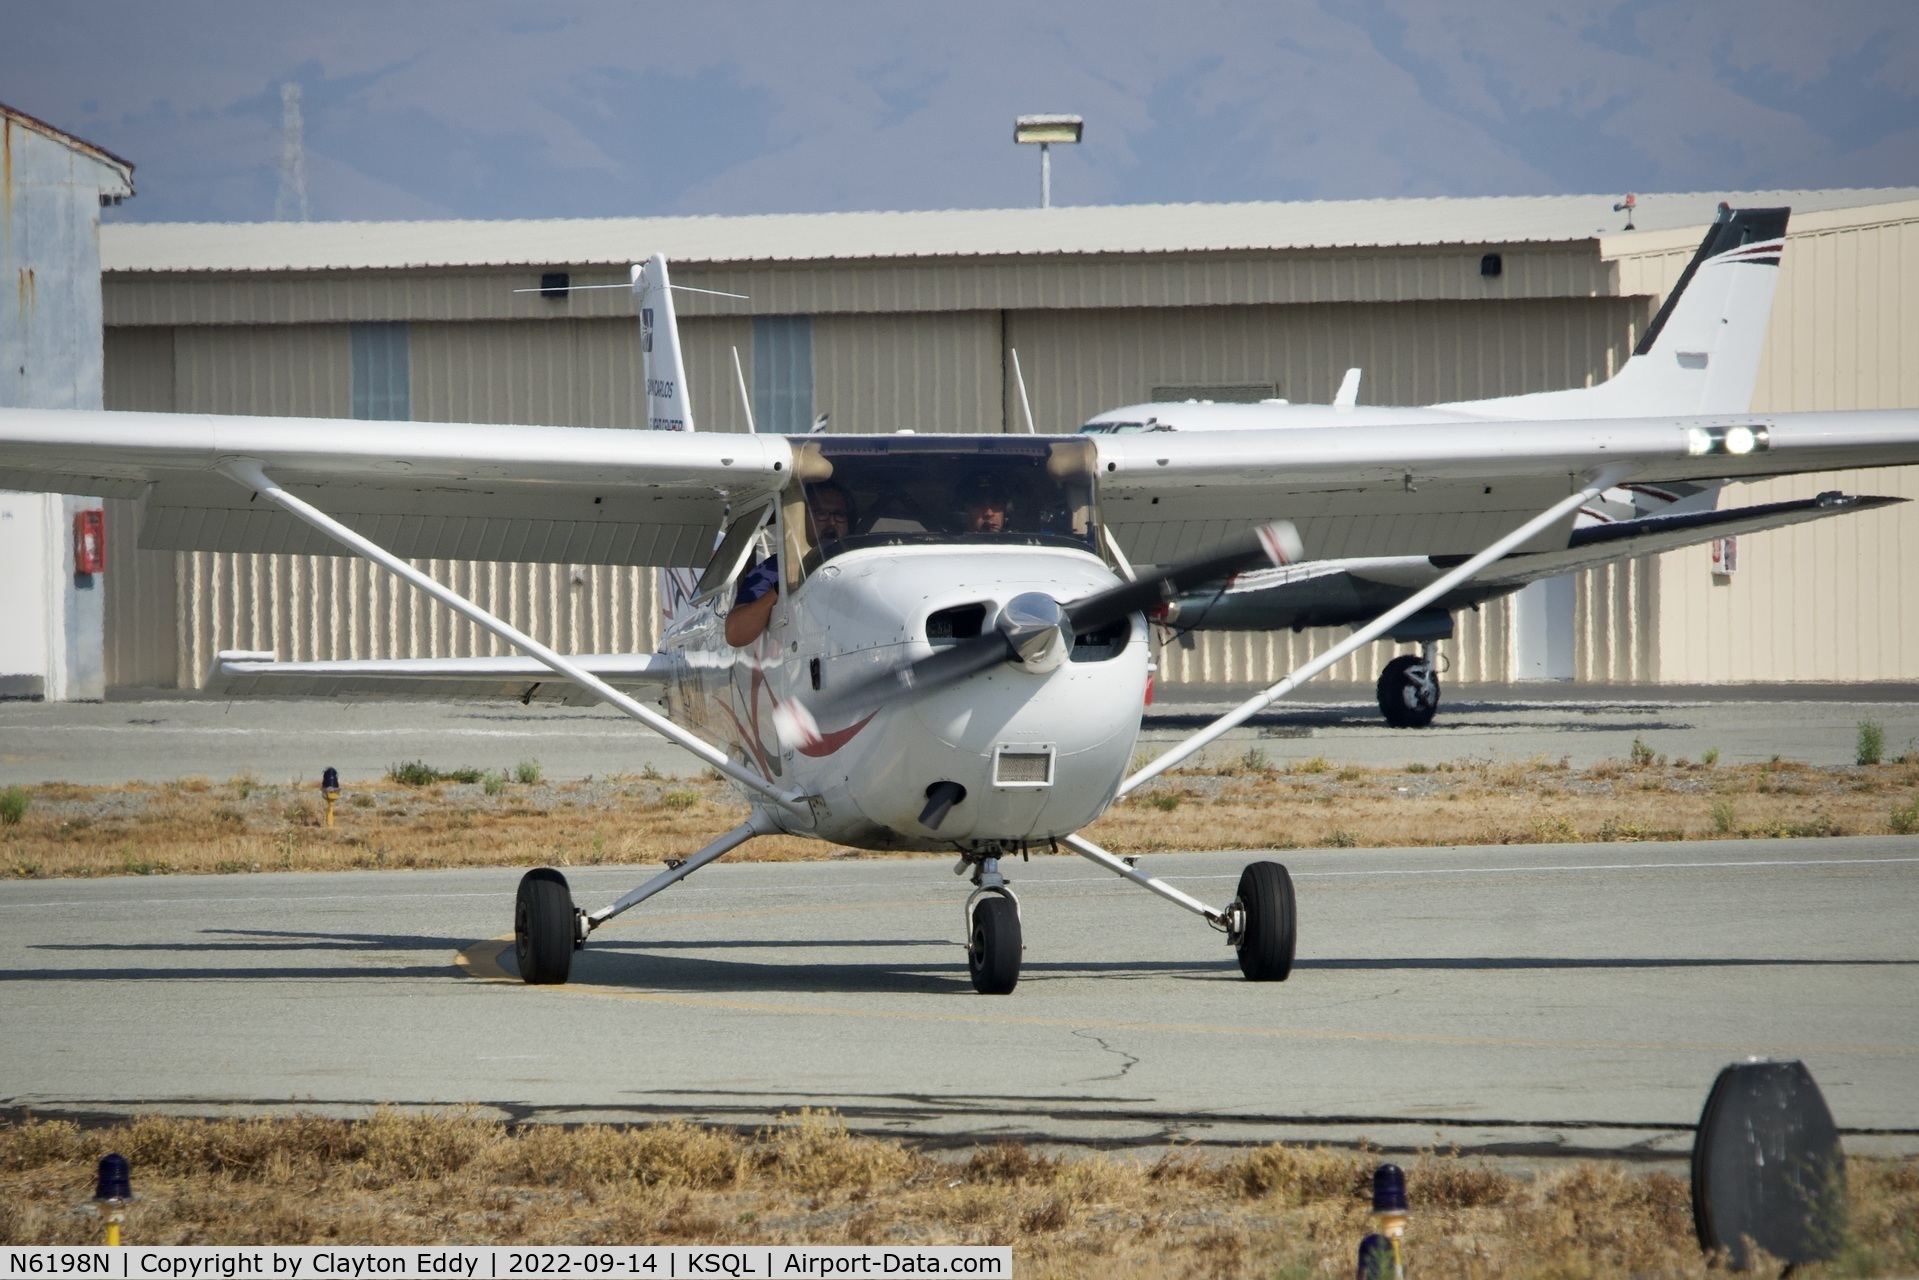 N6198N, 2008 Cessna 172S C/N 172S10792, San Carlos Airport in California 2022.